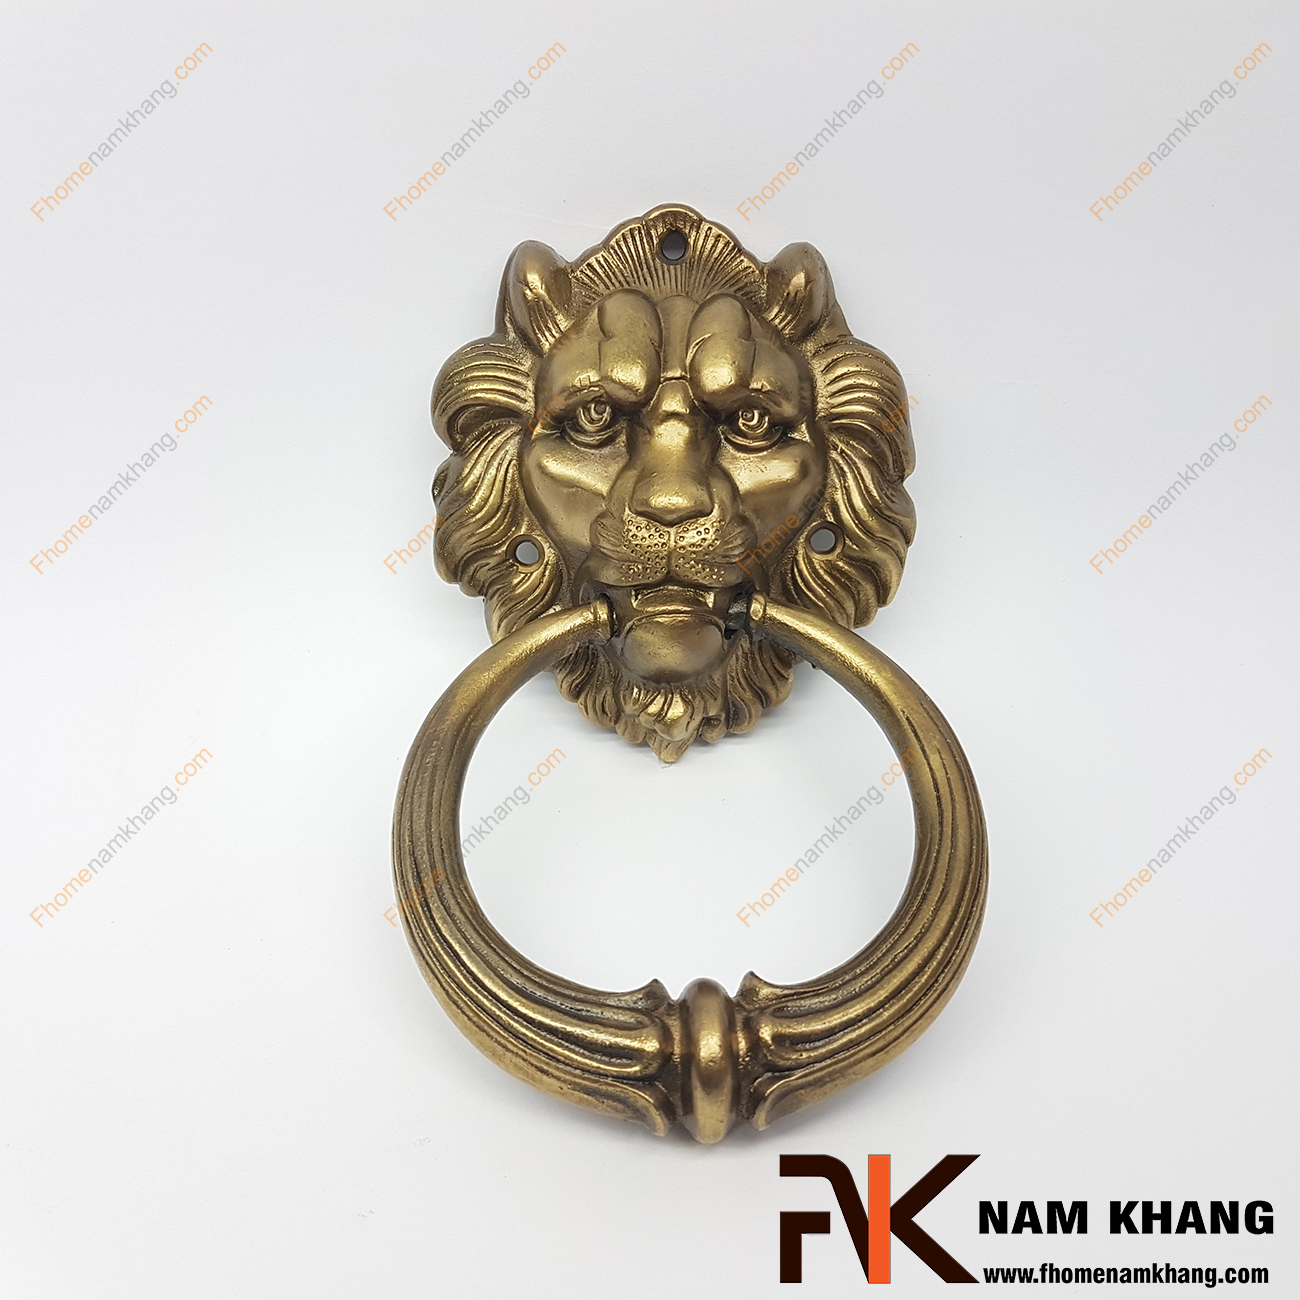 Núm đồng đầu sư tử NKD096 là một sản phẩm nội thất được chế tạo lấy cảm hứng từ sự uy quyền của loài sư tử dũng mãnh. Được đúc áp lực cao từ chất liệu đồng cao cấp núm đầu sư tử có độ bền cao và chịu được lực kéo nắm tốt.